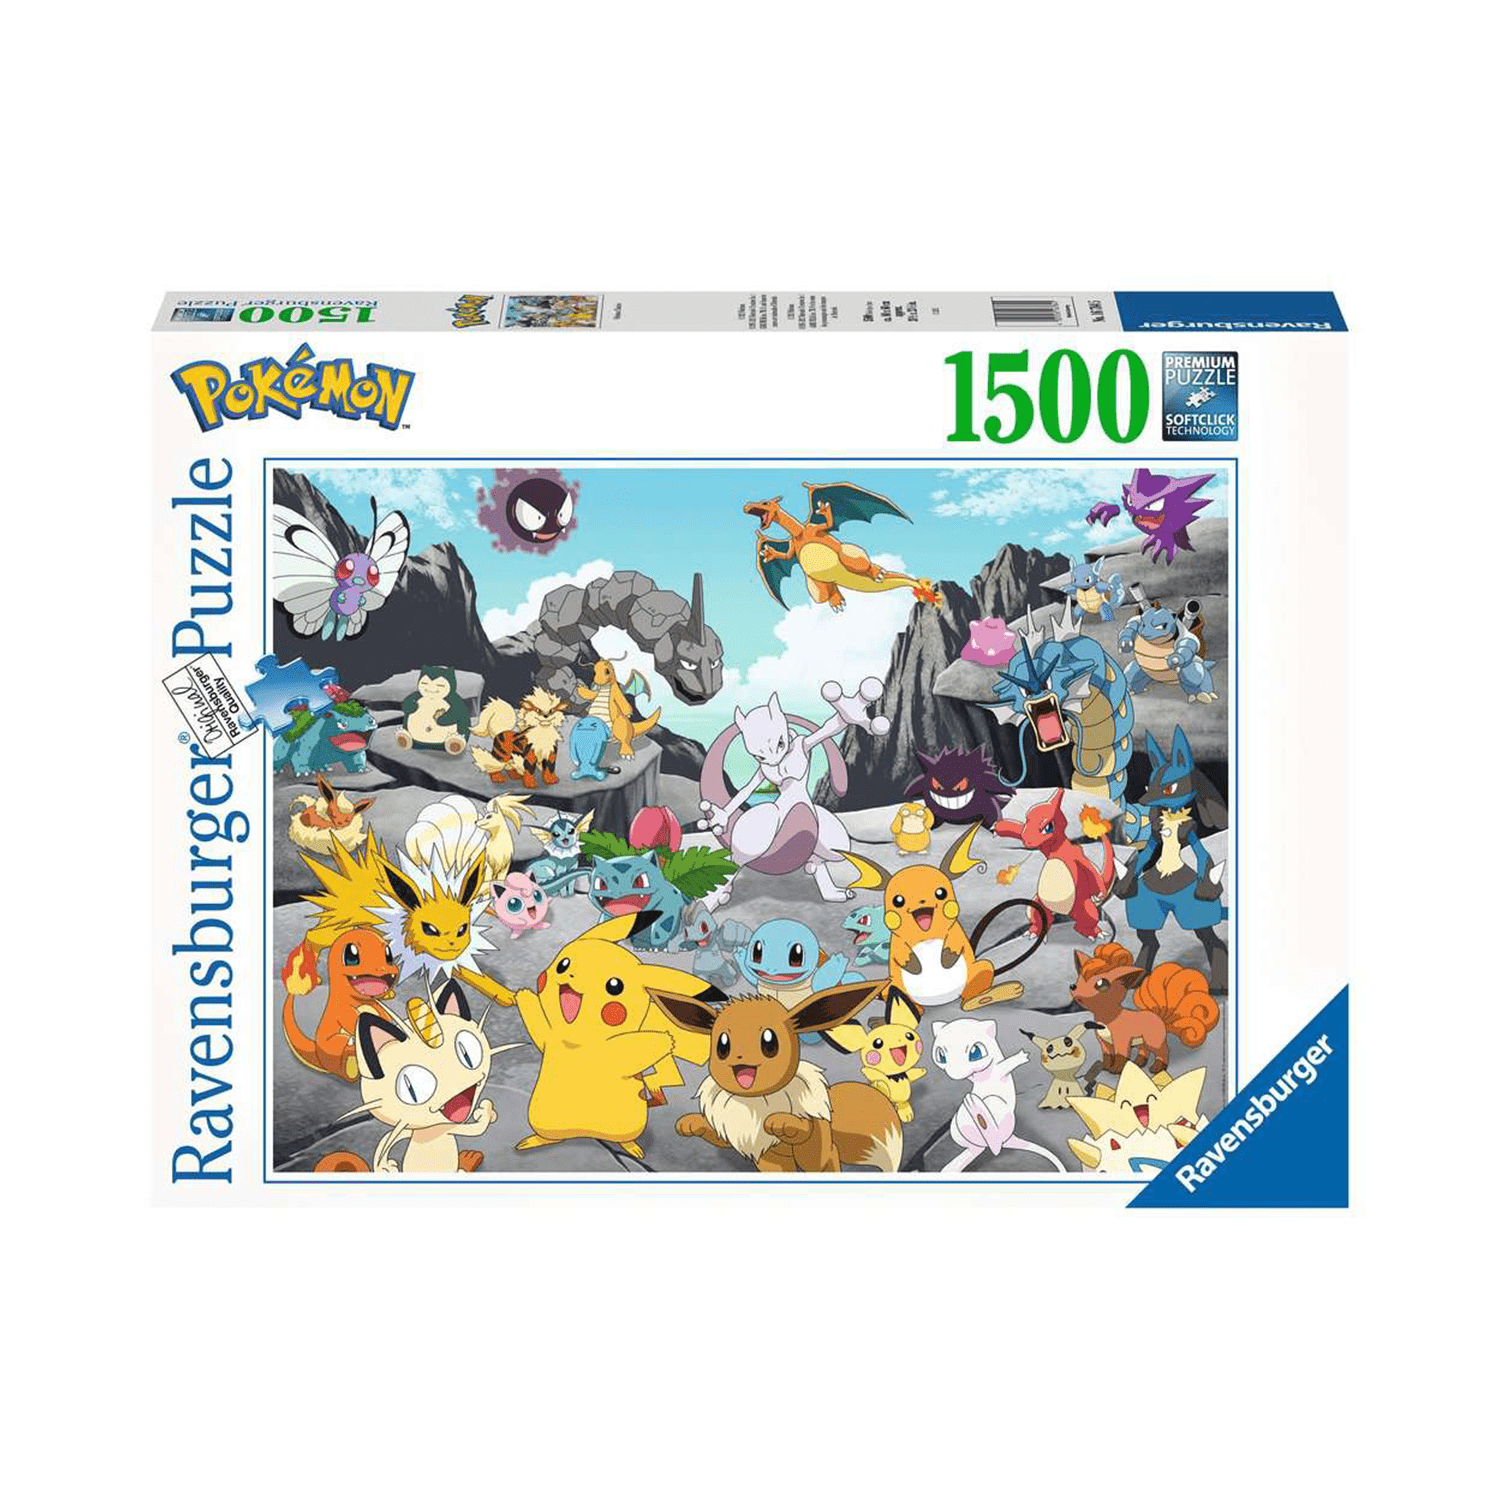 Ravensburger Pokemon Challenge Puzzle 1000 Pieces Multicolor